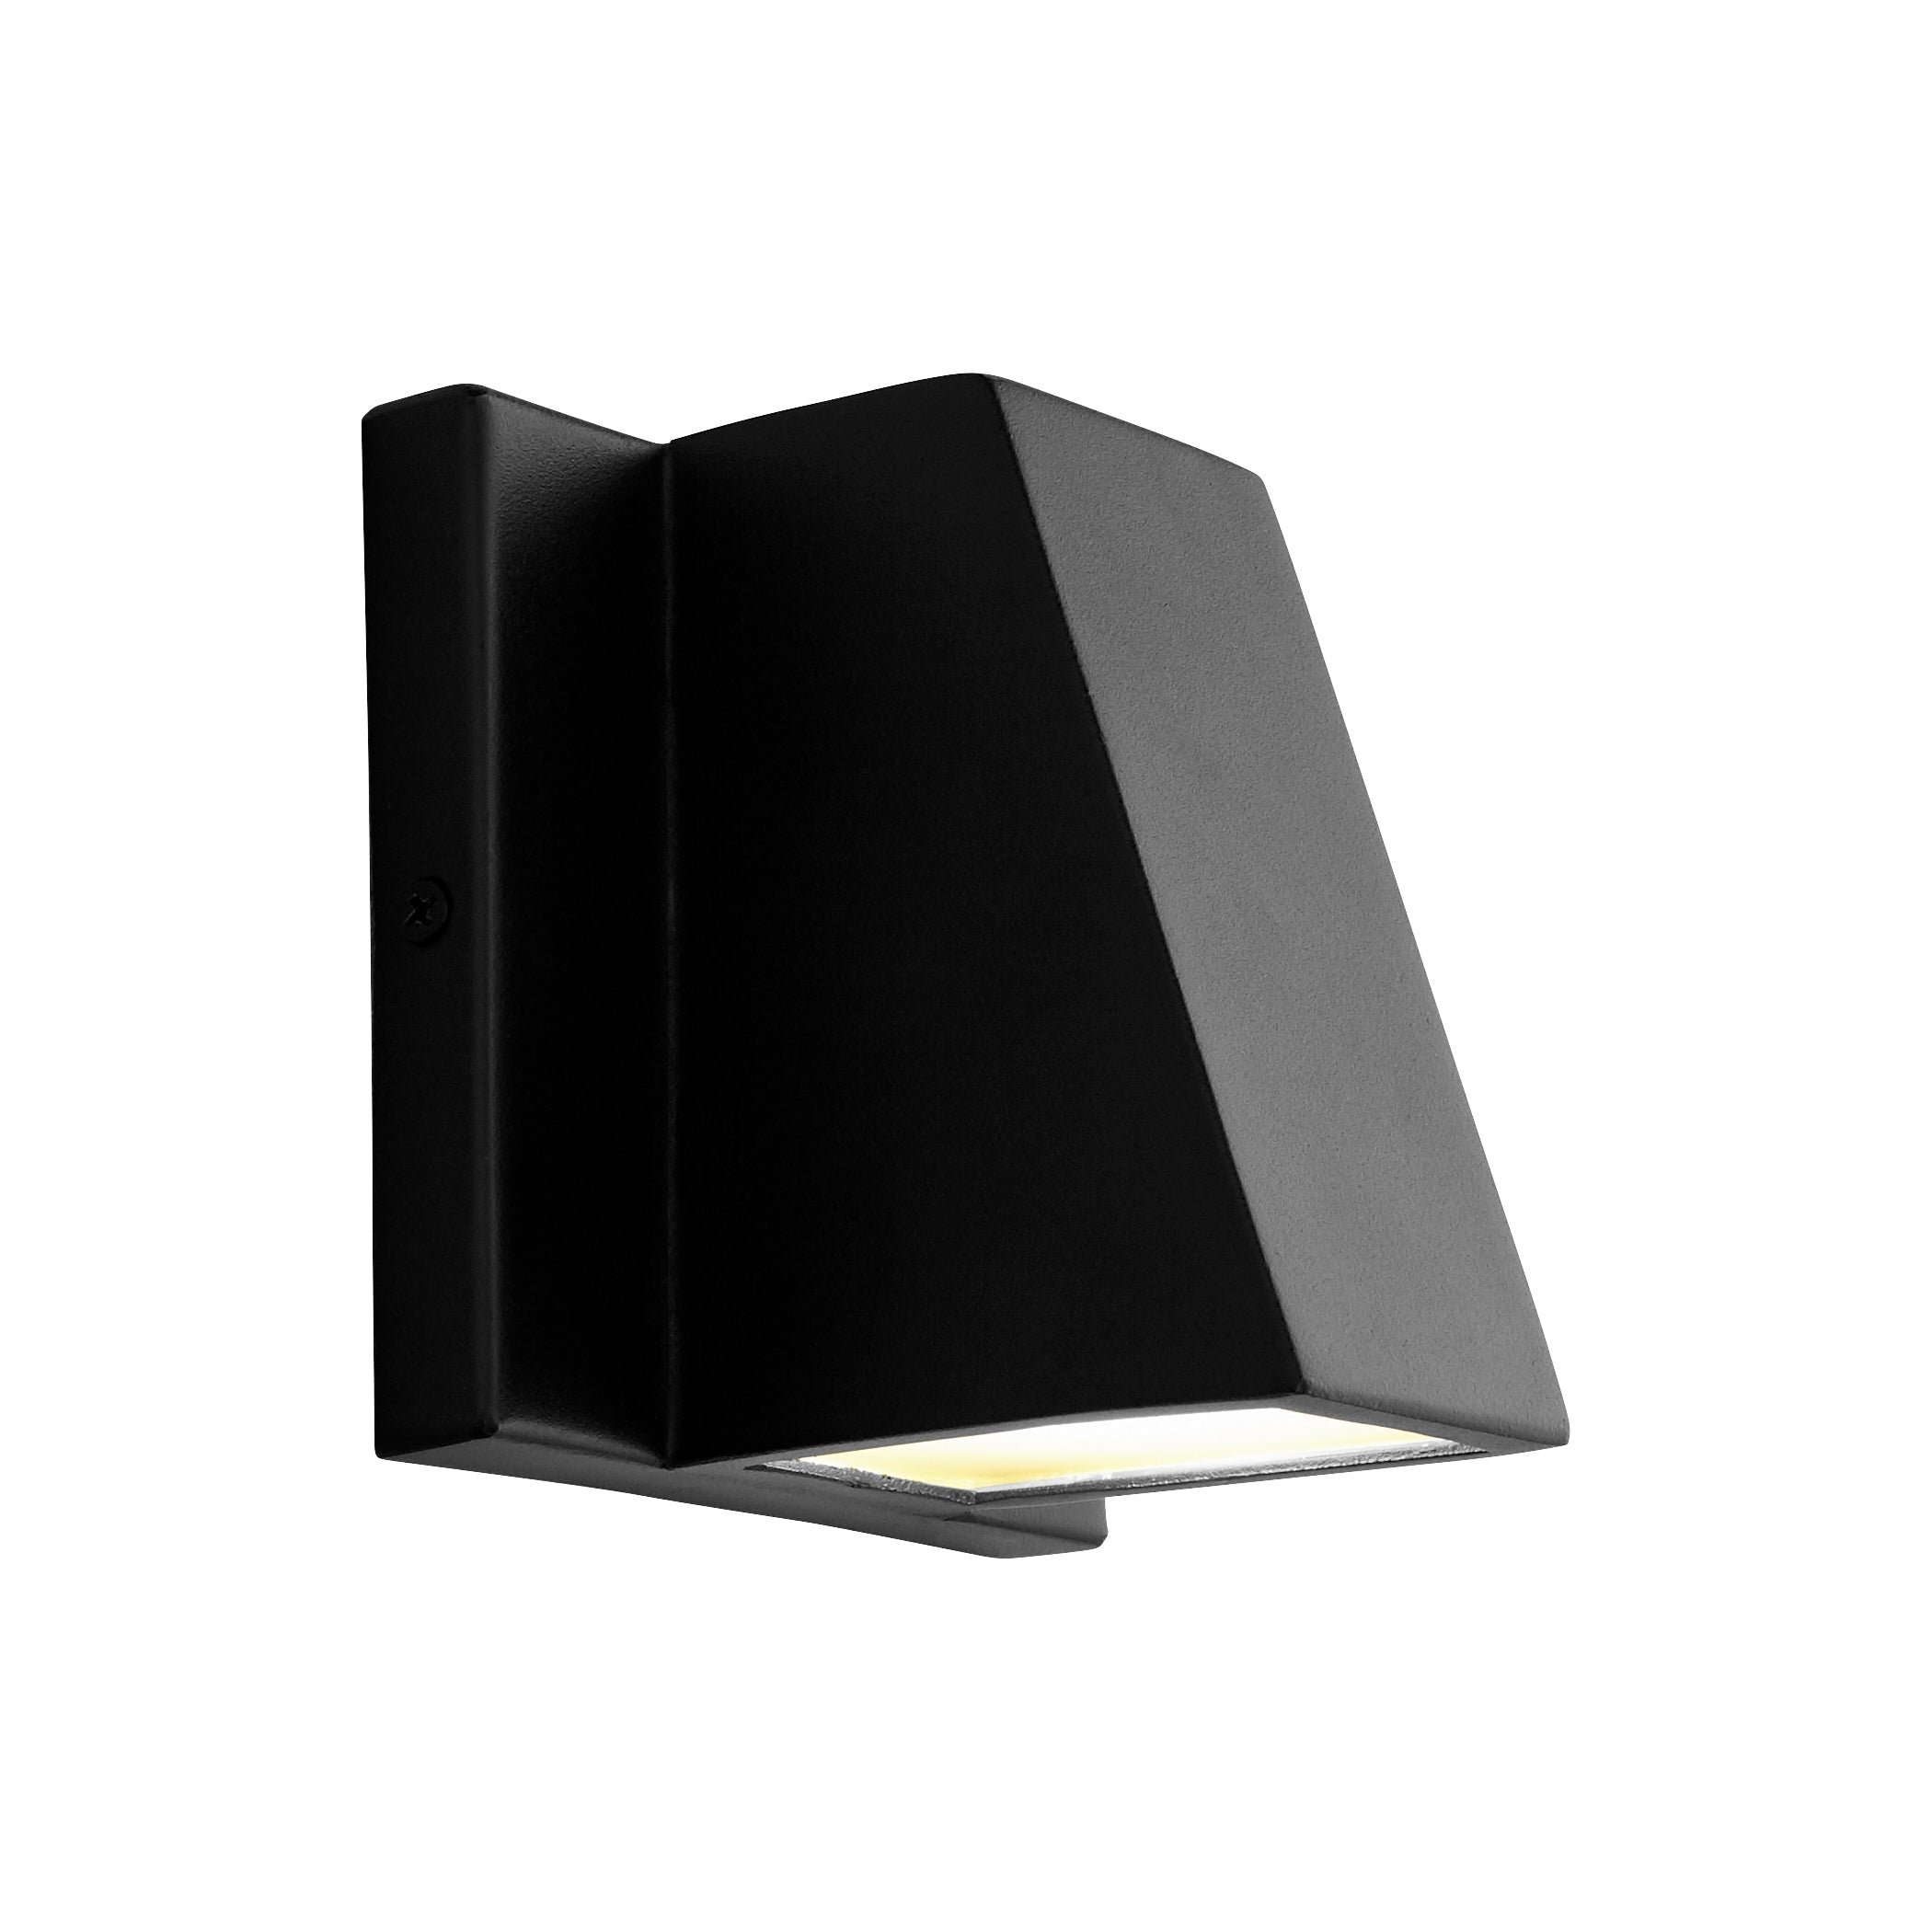 Oxygen TITAN 3-708-15 Outdoor Modern Wall Pack Light Fixture - Black